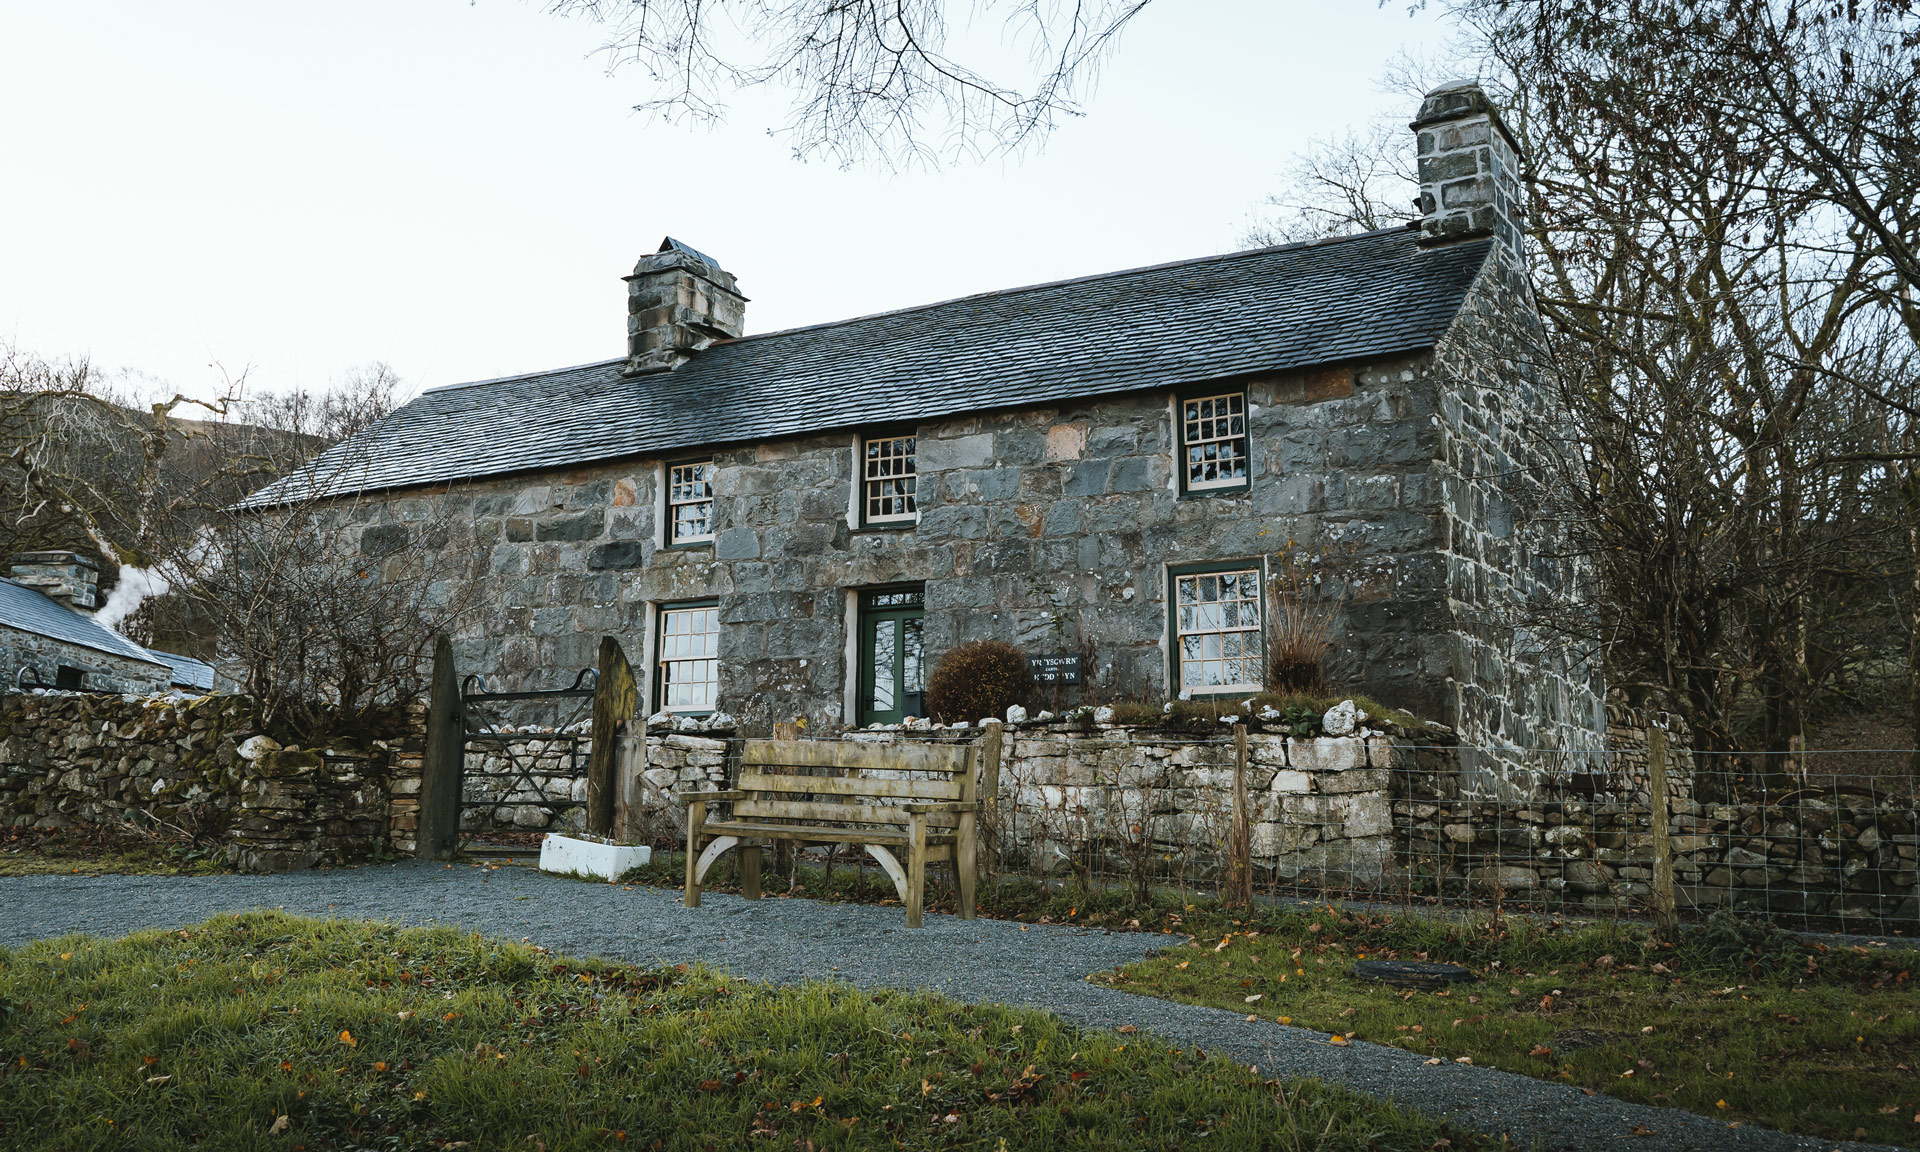 The Yr Ysgwrn farmhouse